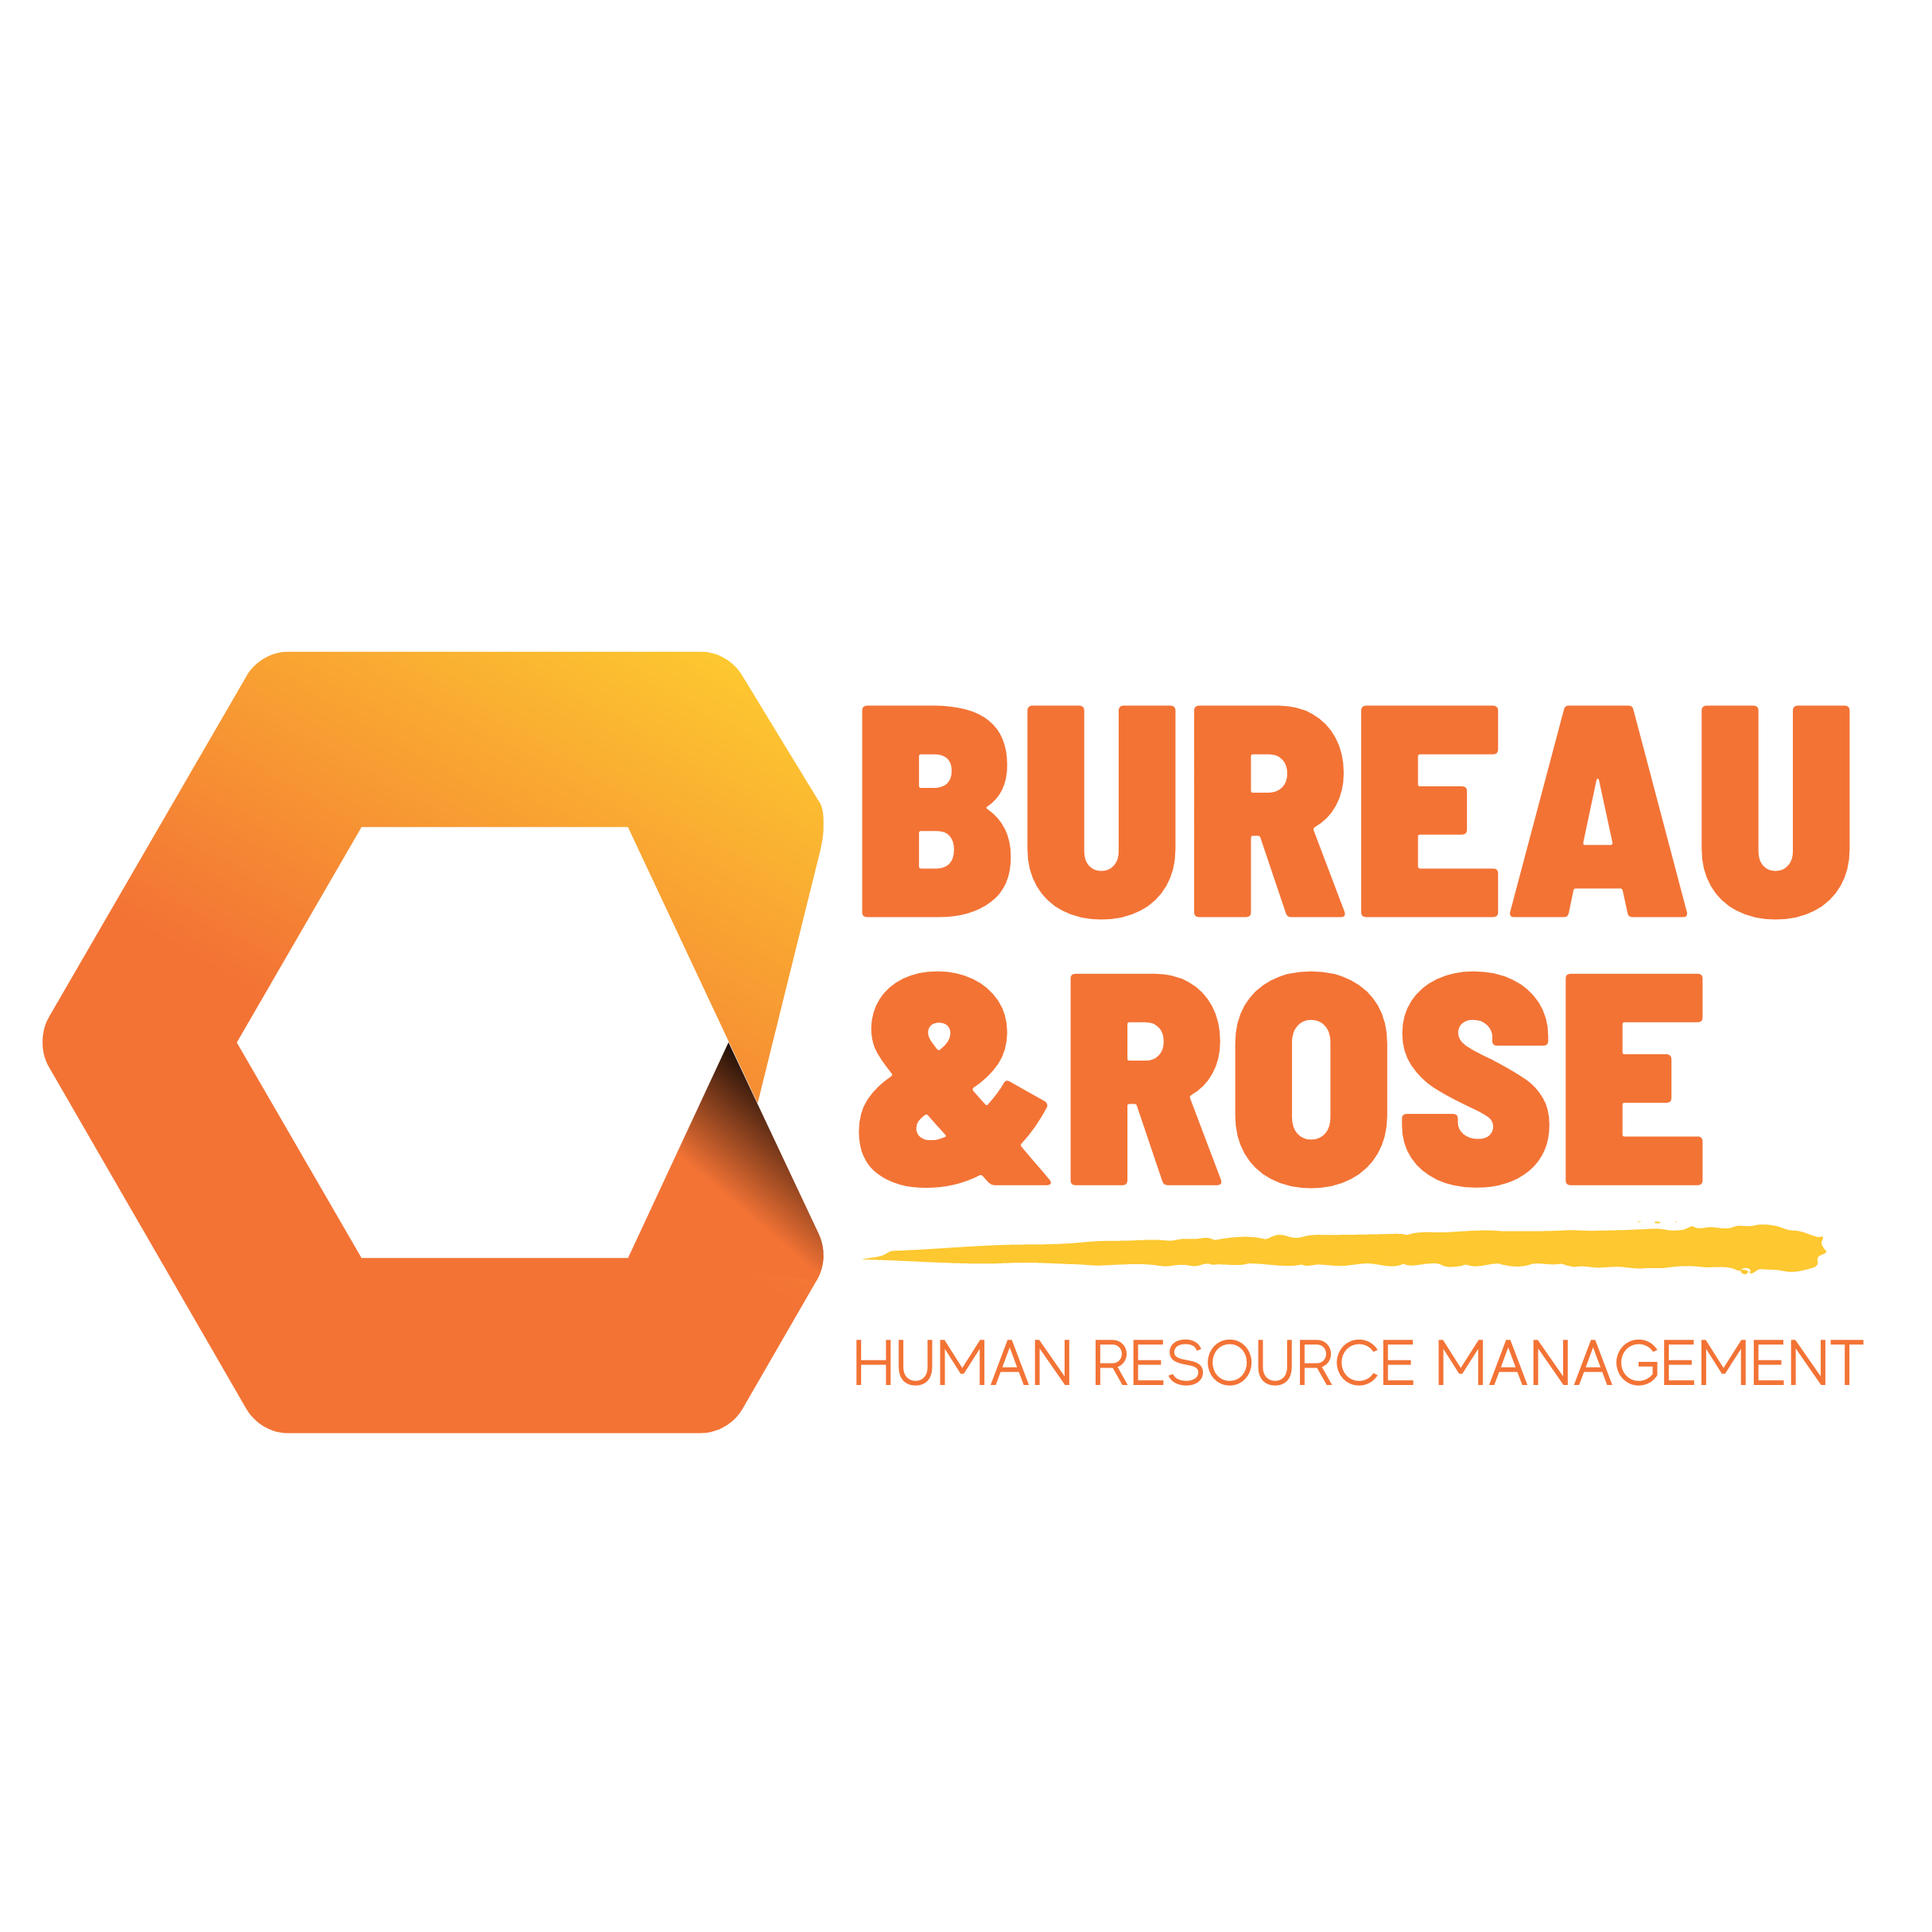 Bureau &Rose